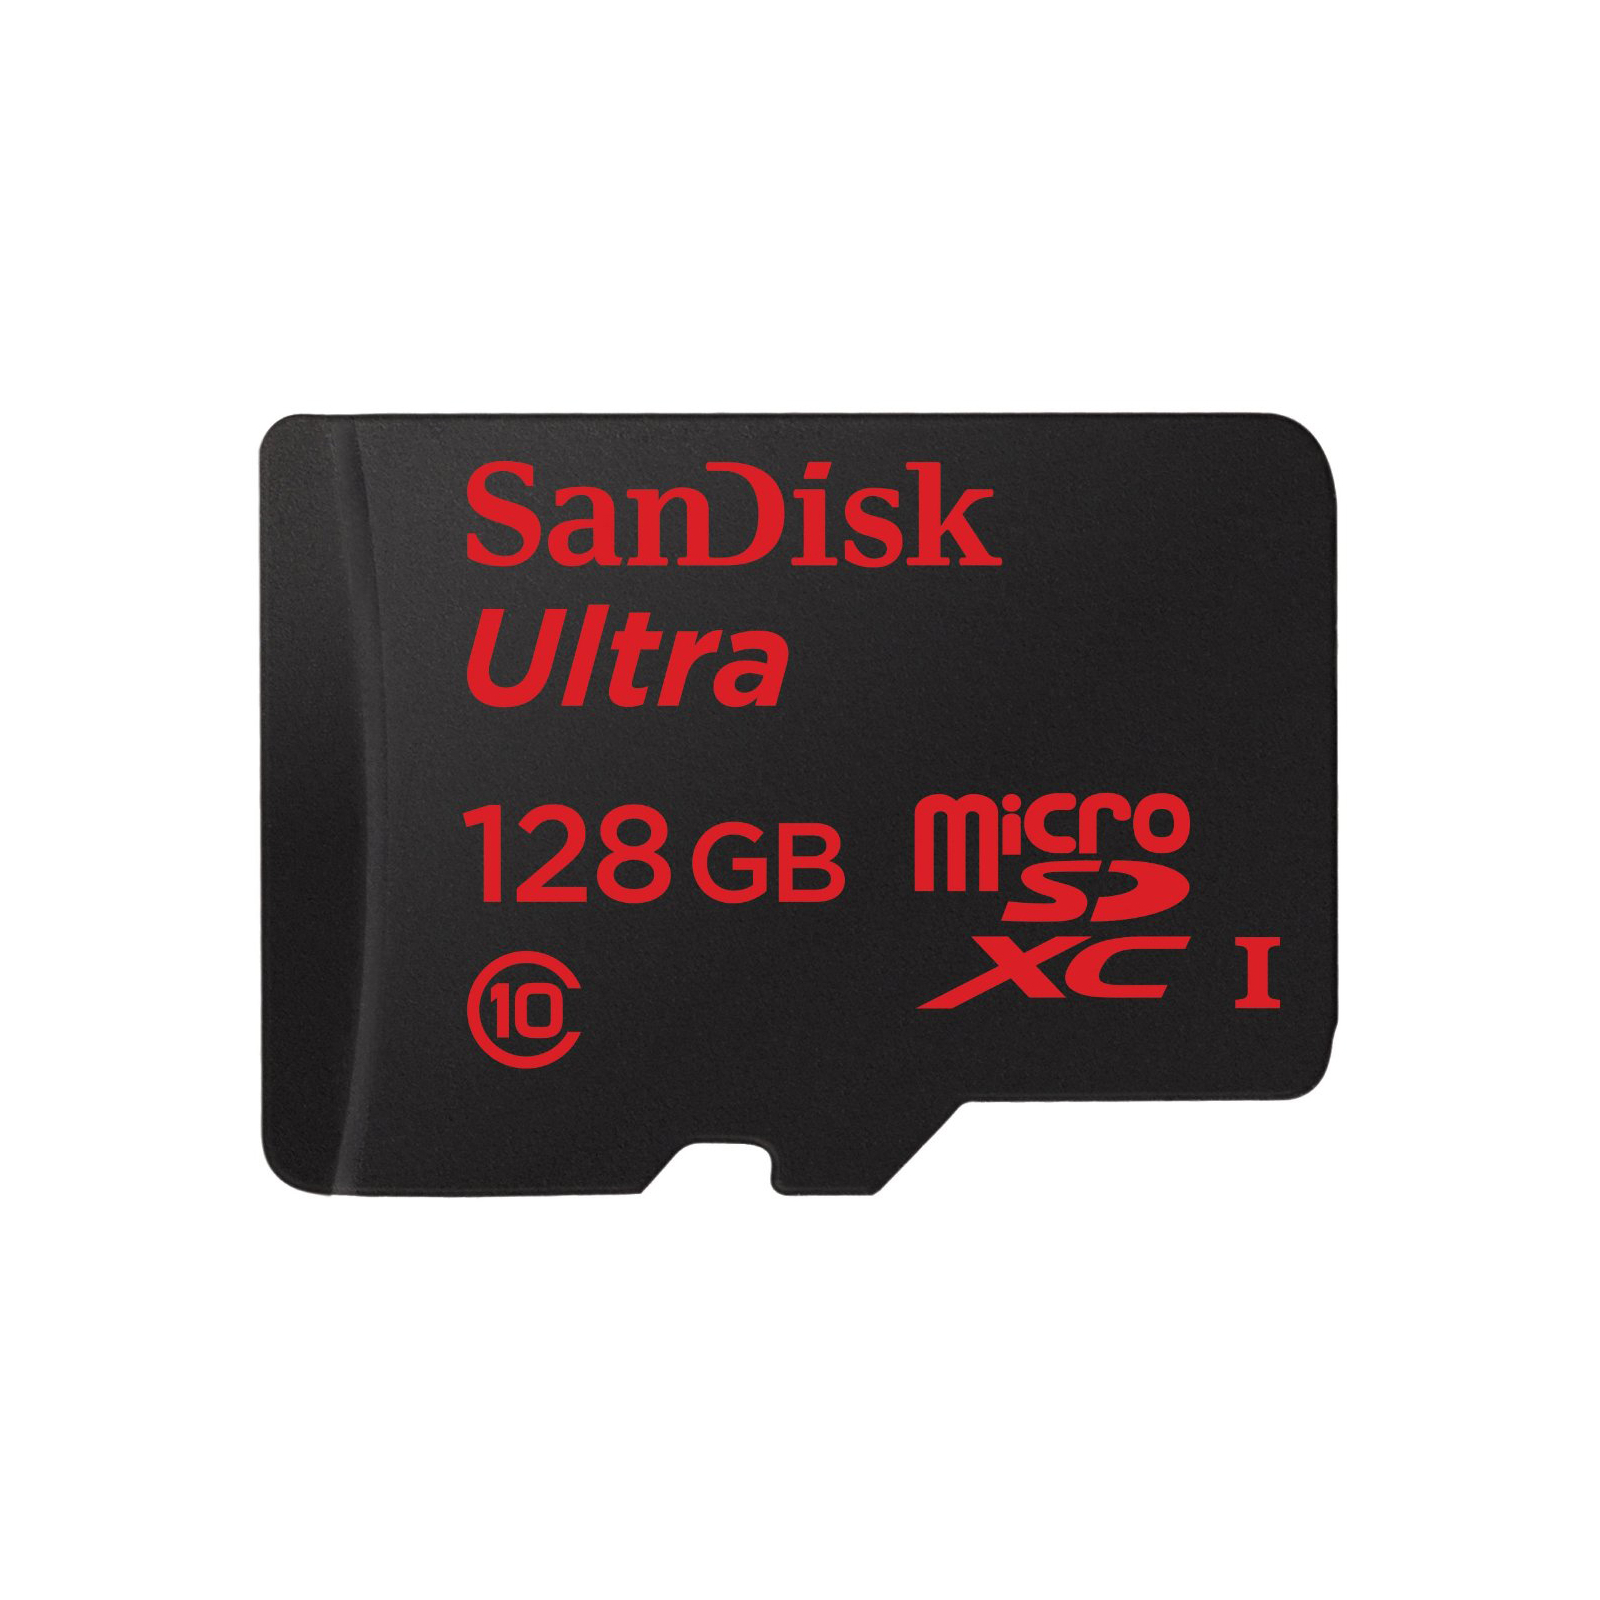 Карта памяти SanDisk 128GB microSDXC Class 10 UHS-I (SDSQUNC-128G-GN6MA)